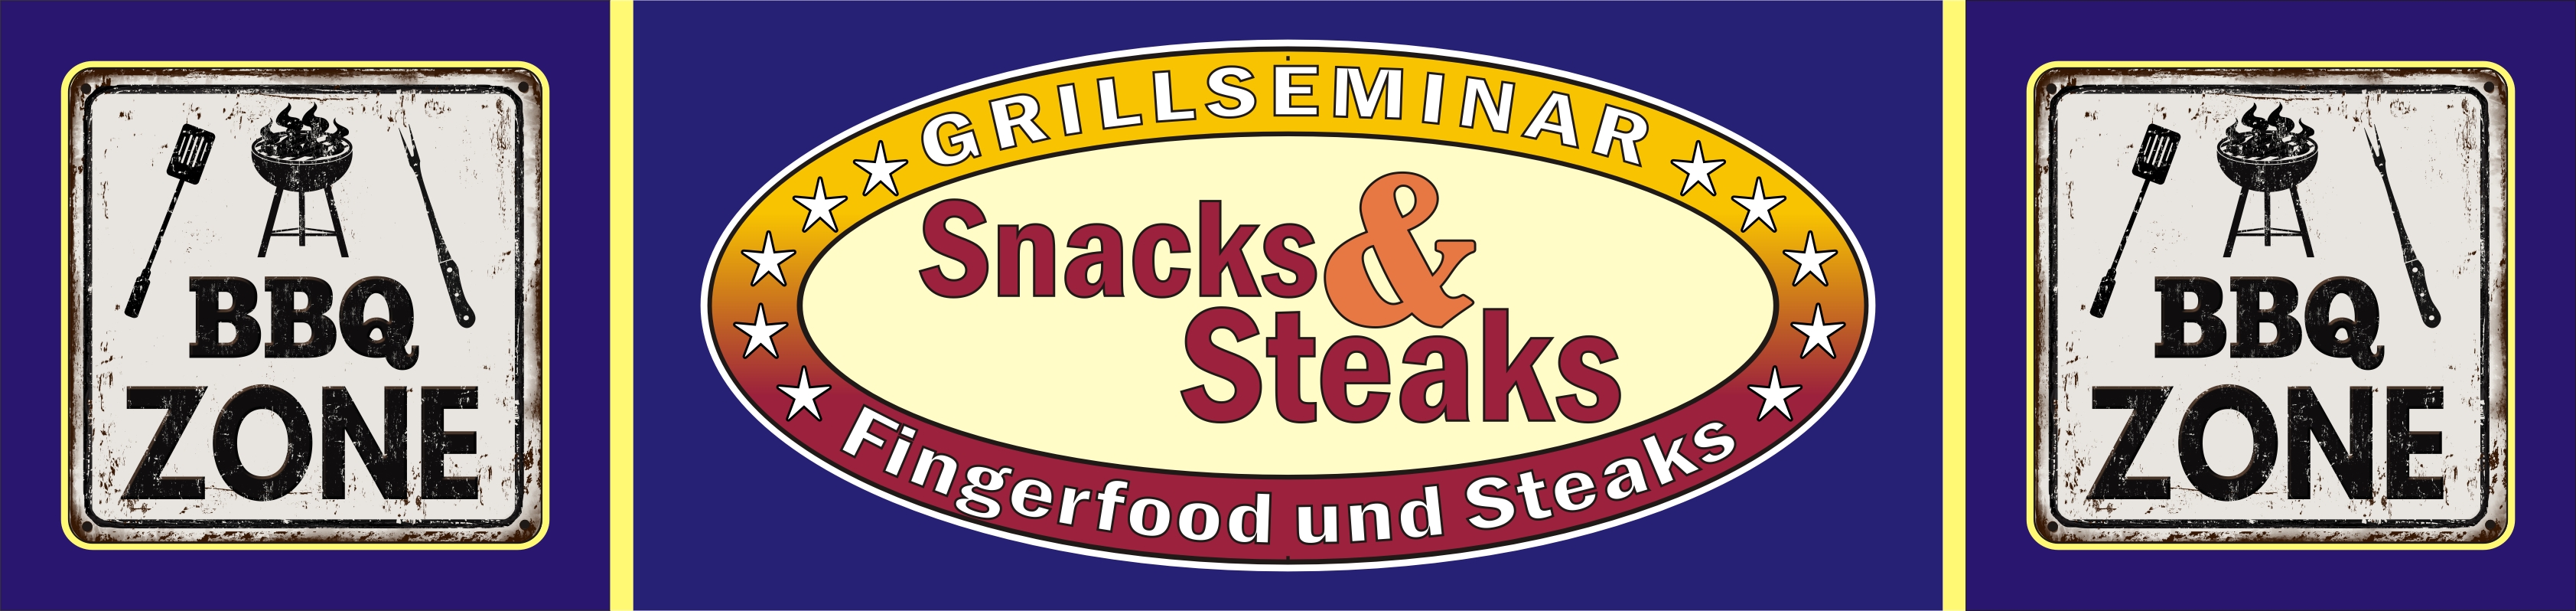 Der Grillkurs SNACKS & STEAKS, für Teilnehmer aus Herford, Hiddenhausen, Bad Salzuflen, Bielefeld, Paderborn, Gütersloh,...